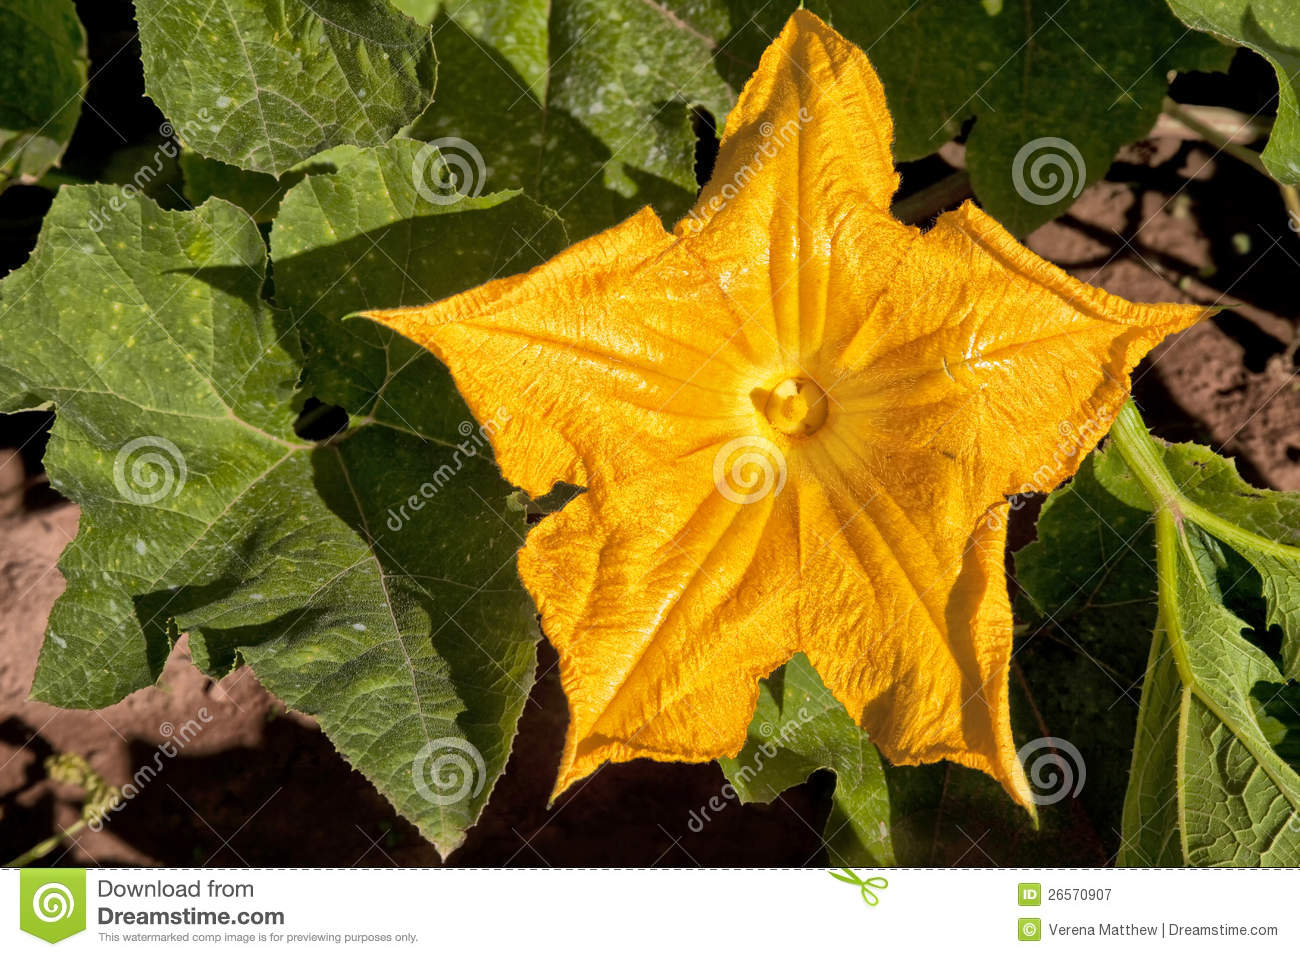 Pumpkin Or A Squash Flower In The Home Garden Or The Farmer S Pumpkin